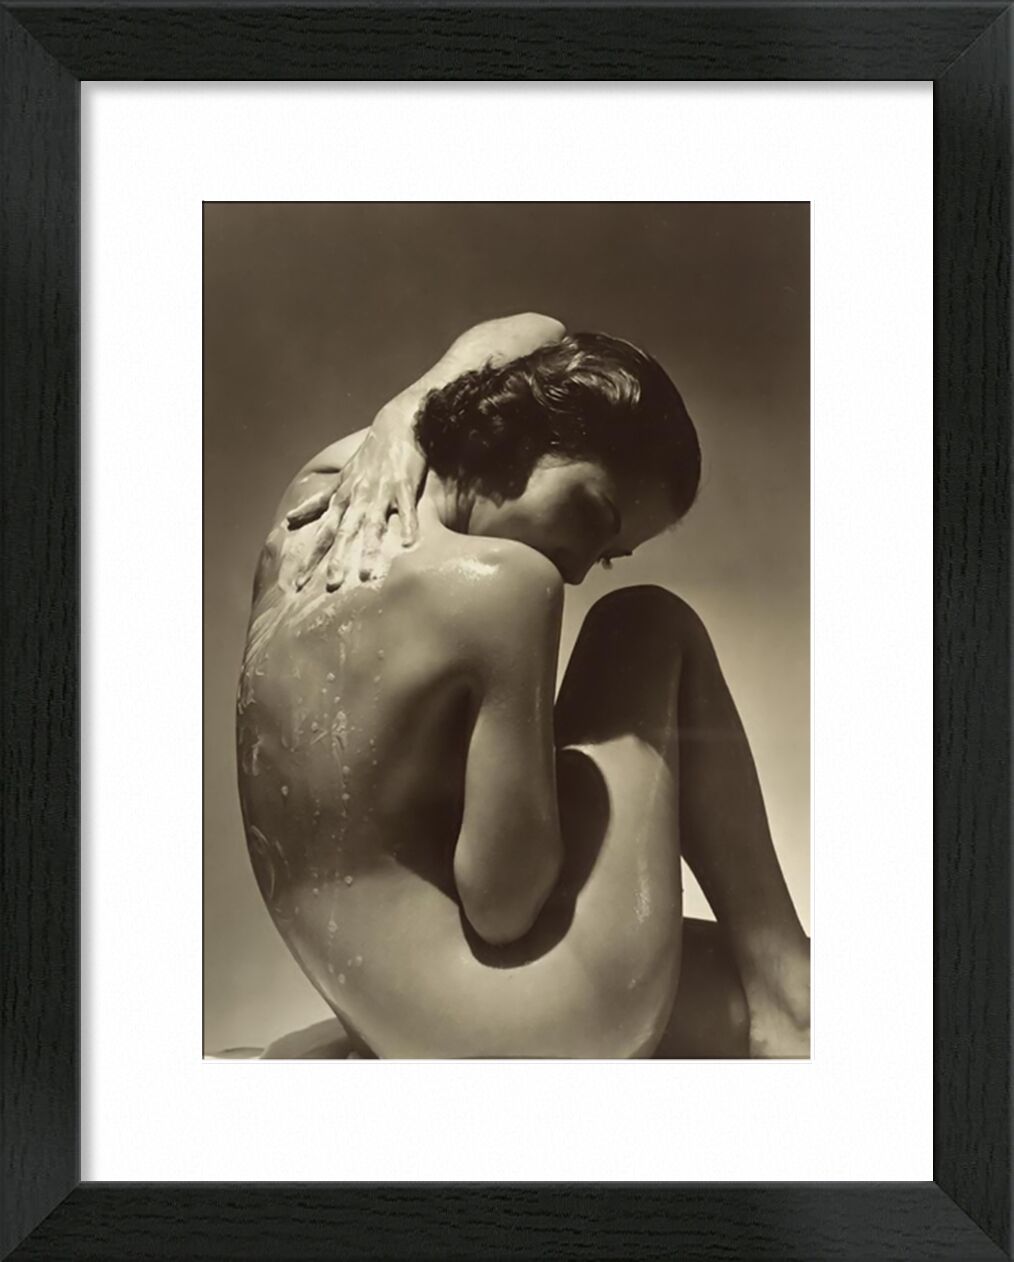 Back - Edward Steichen 1923 desde Bellas artes, Prodi Art, ducha, savon, Edward Steichen, mujer, de, desnudo